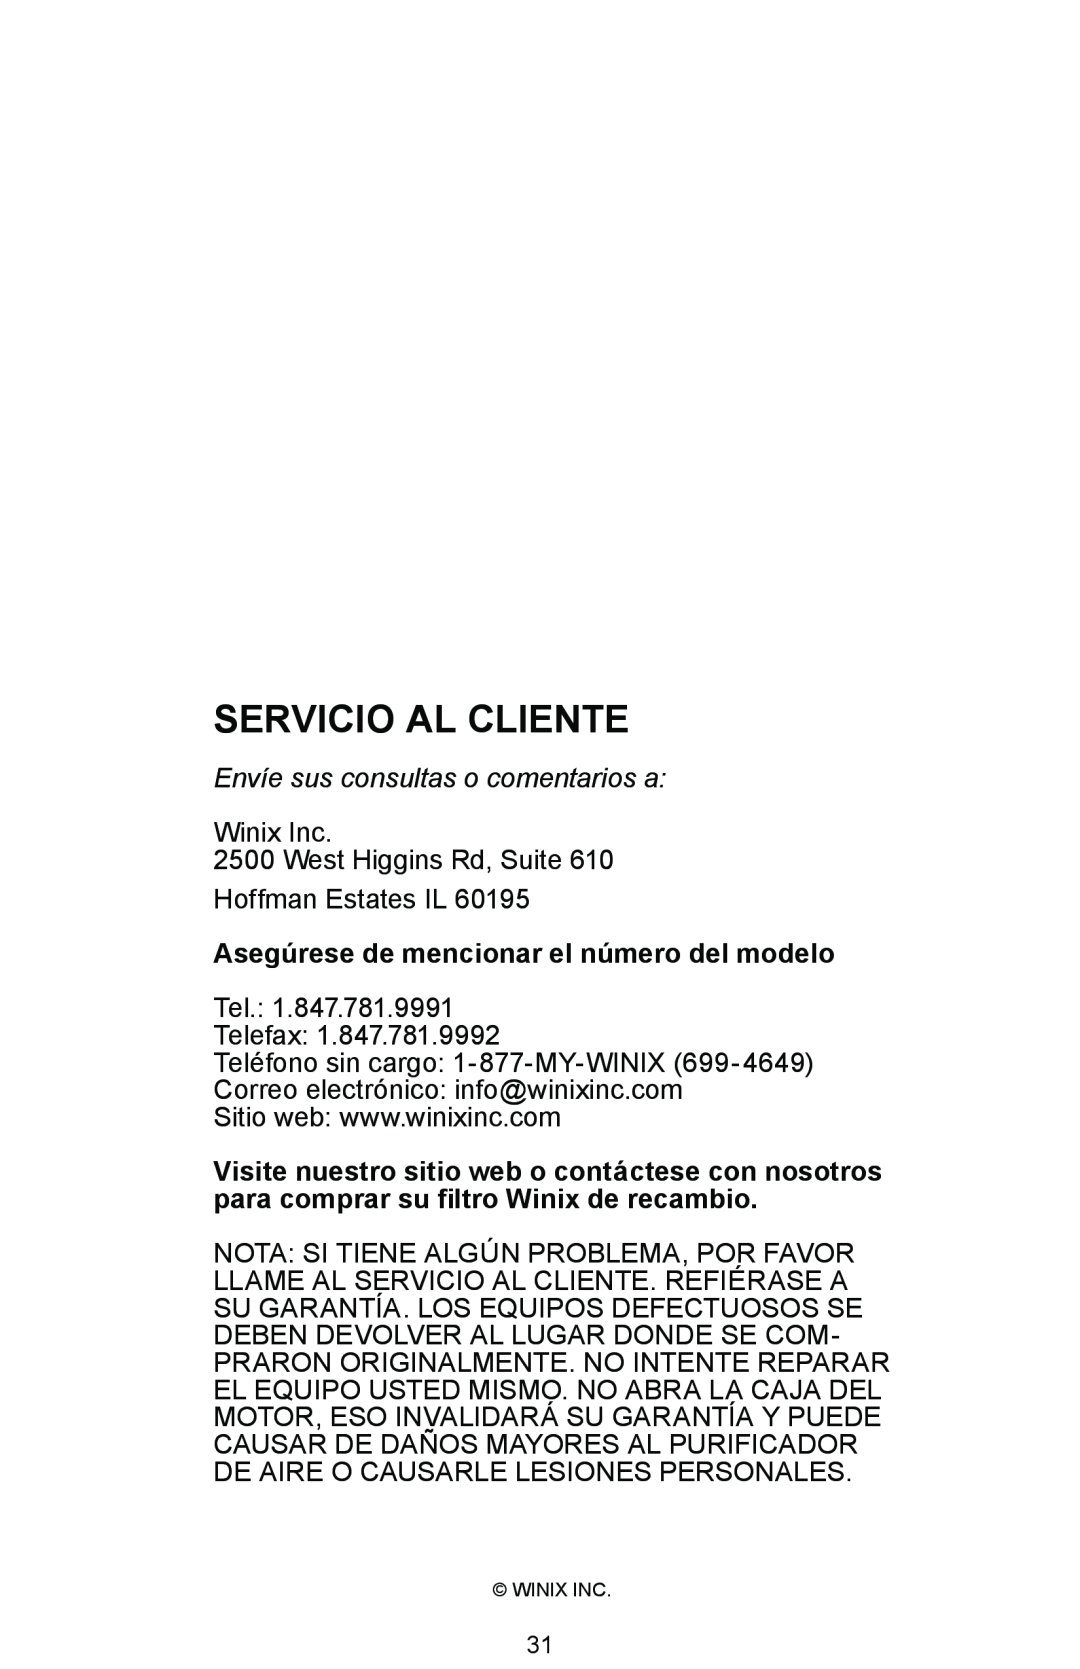 Winix WAC-9000 Envíe sus consultas o comentarios a, Asegúrese de mencionar el número del modelo, Servicio Al Cliente 